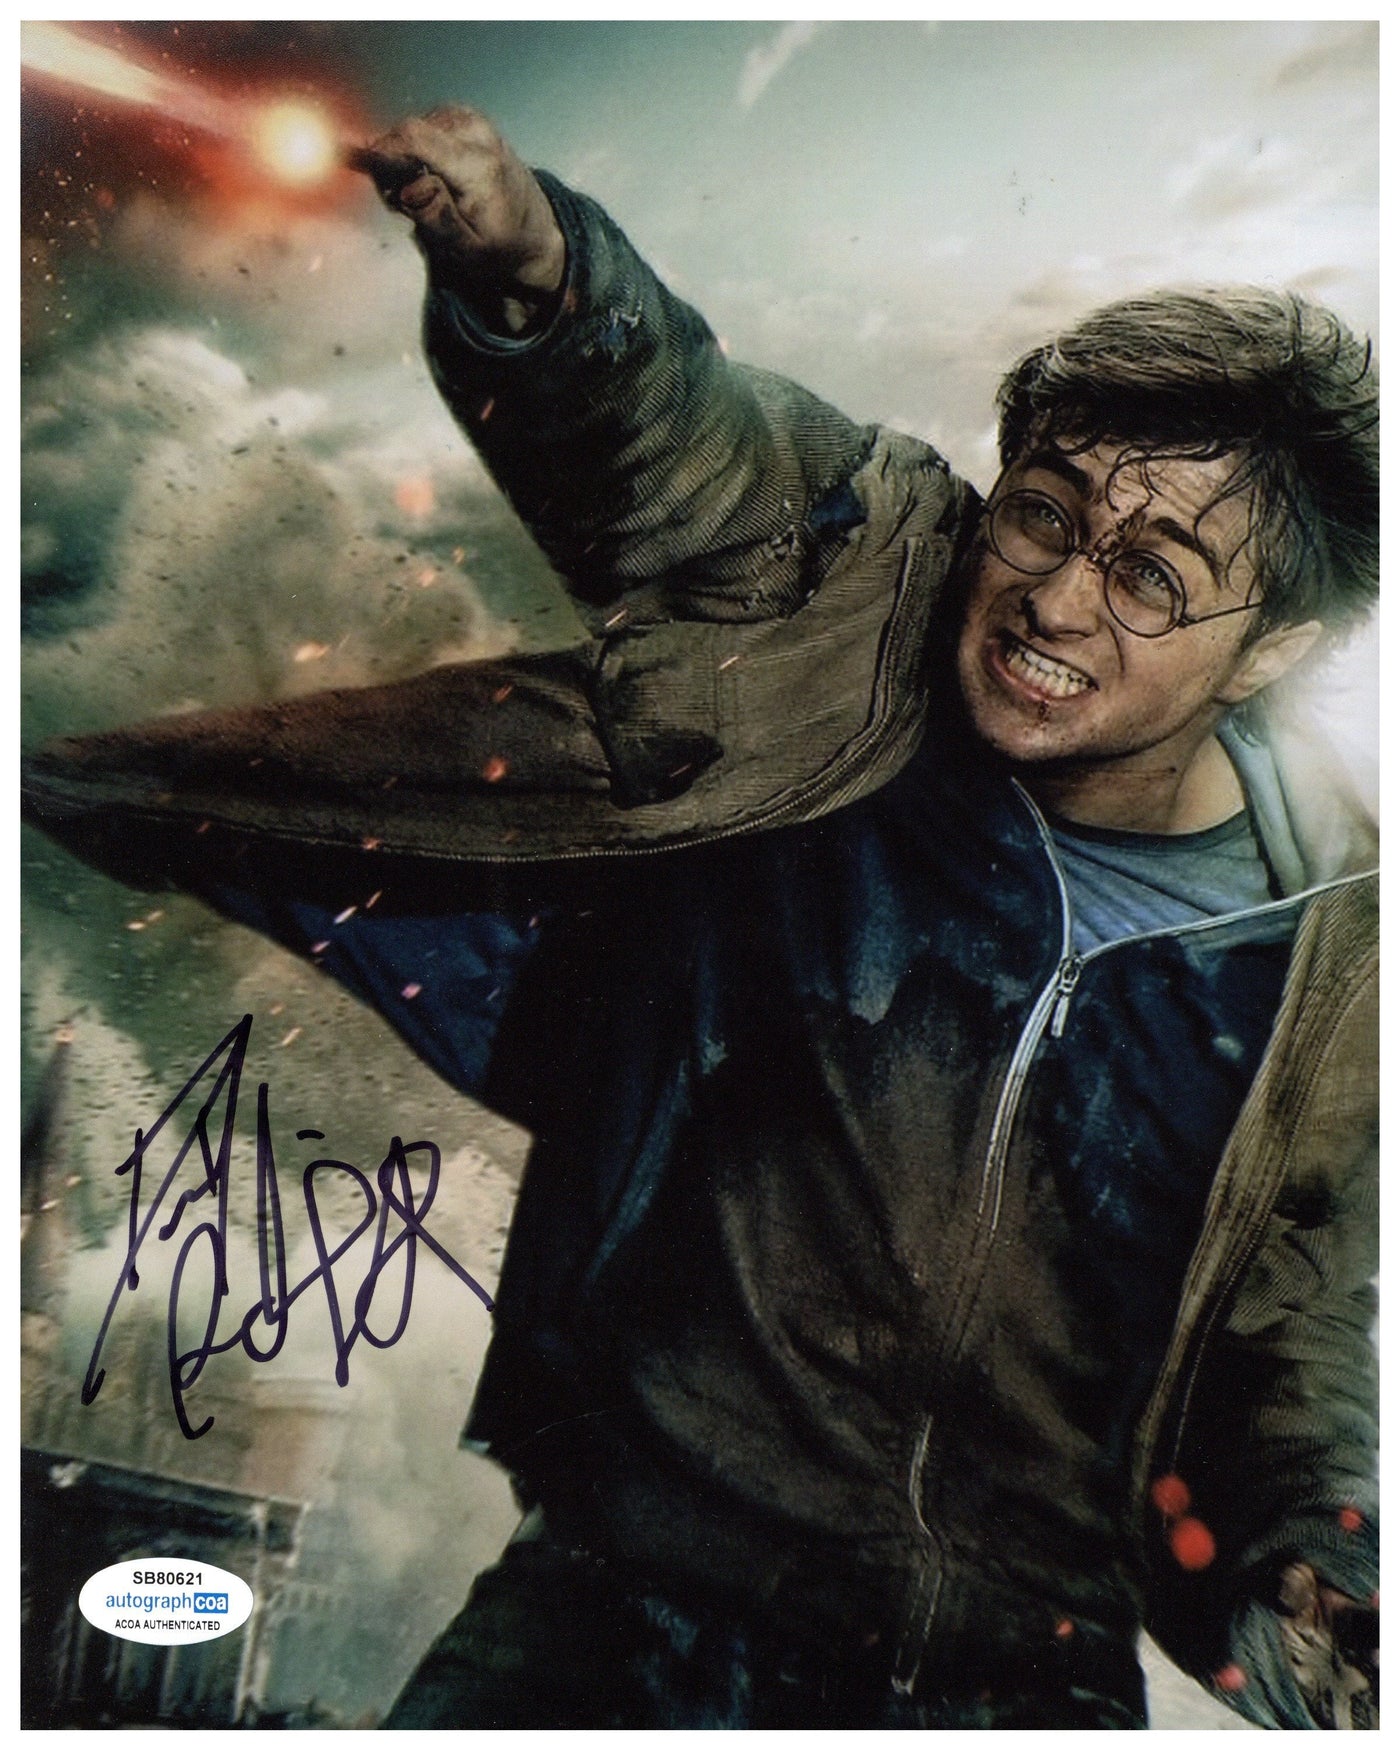 Daniel Radcliffe Signed 8x10 Photo Harry Potter Autographed AutographCOA